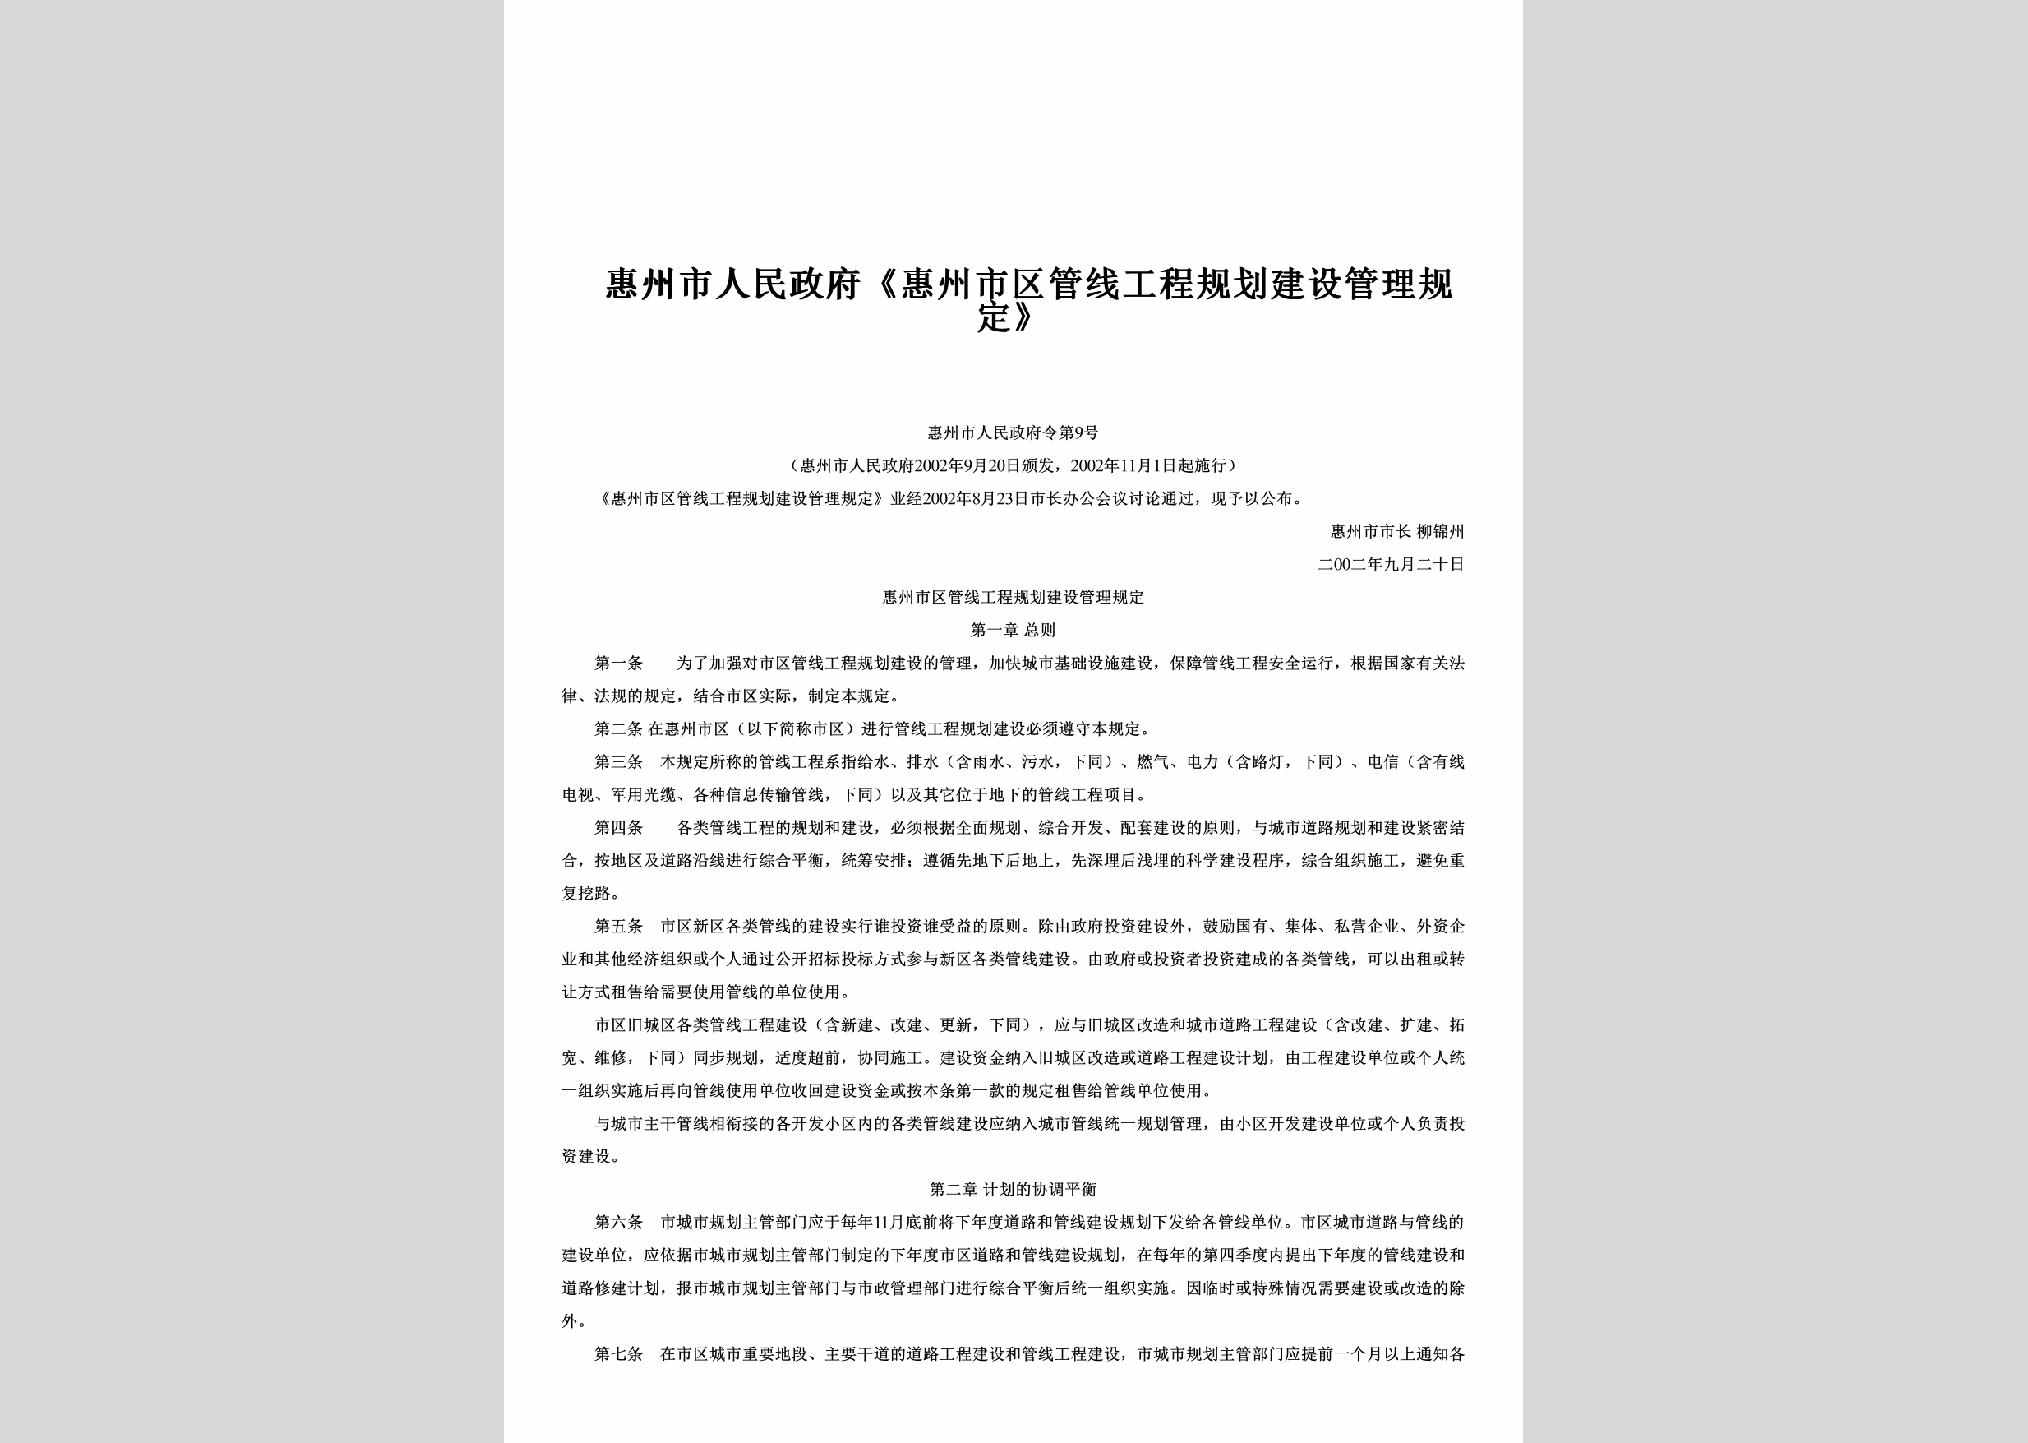 惠州市人民政府令第9号：《惠州市区管线工程规划建设管理规定》